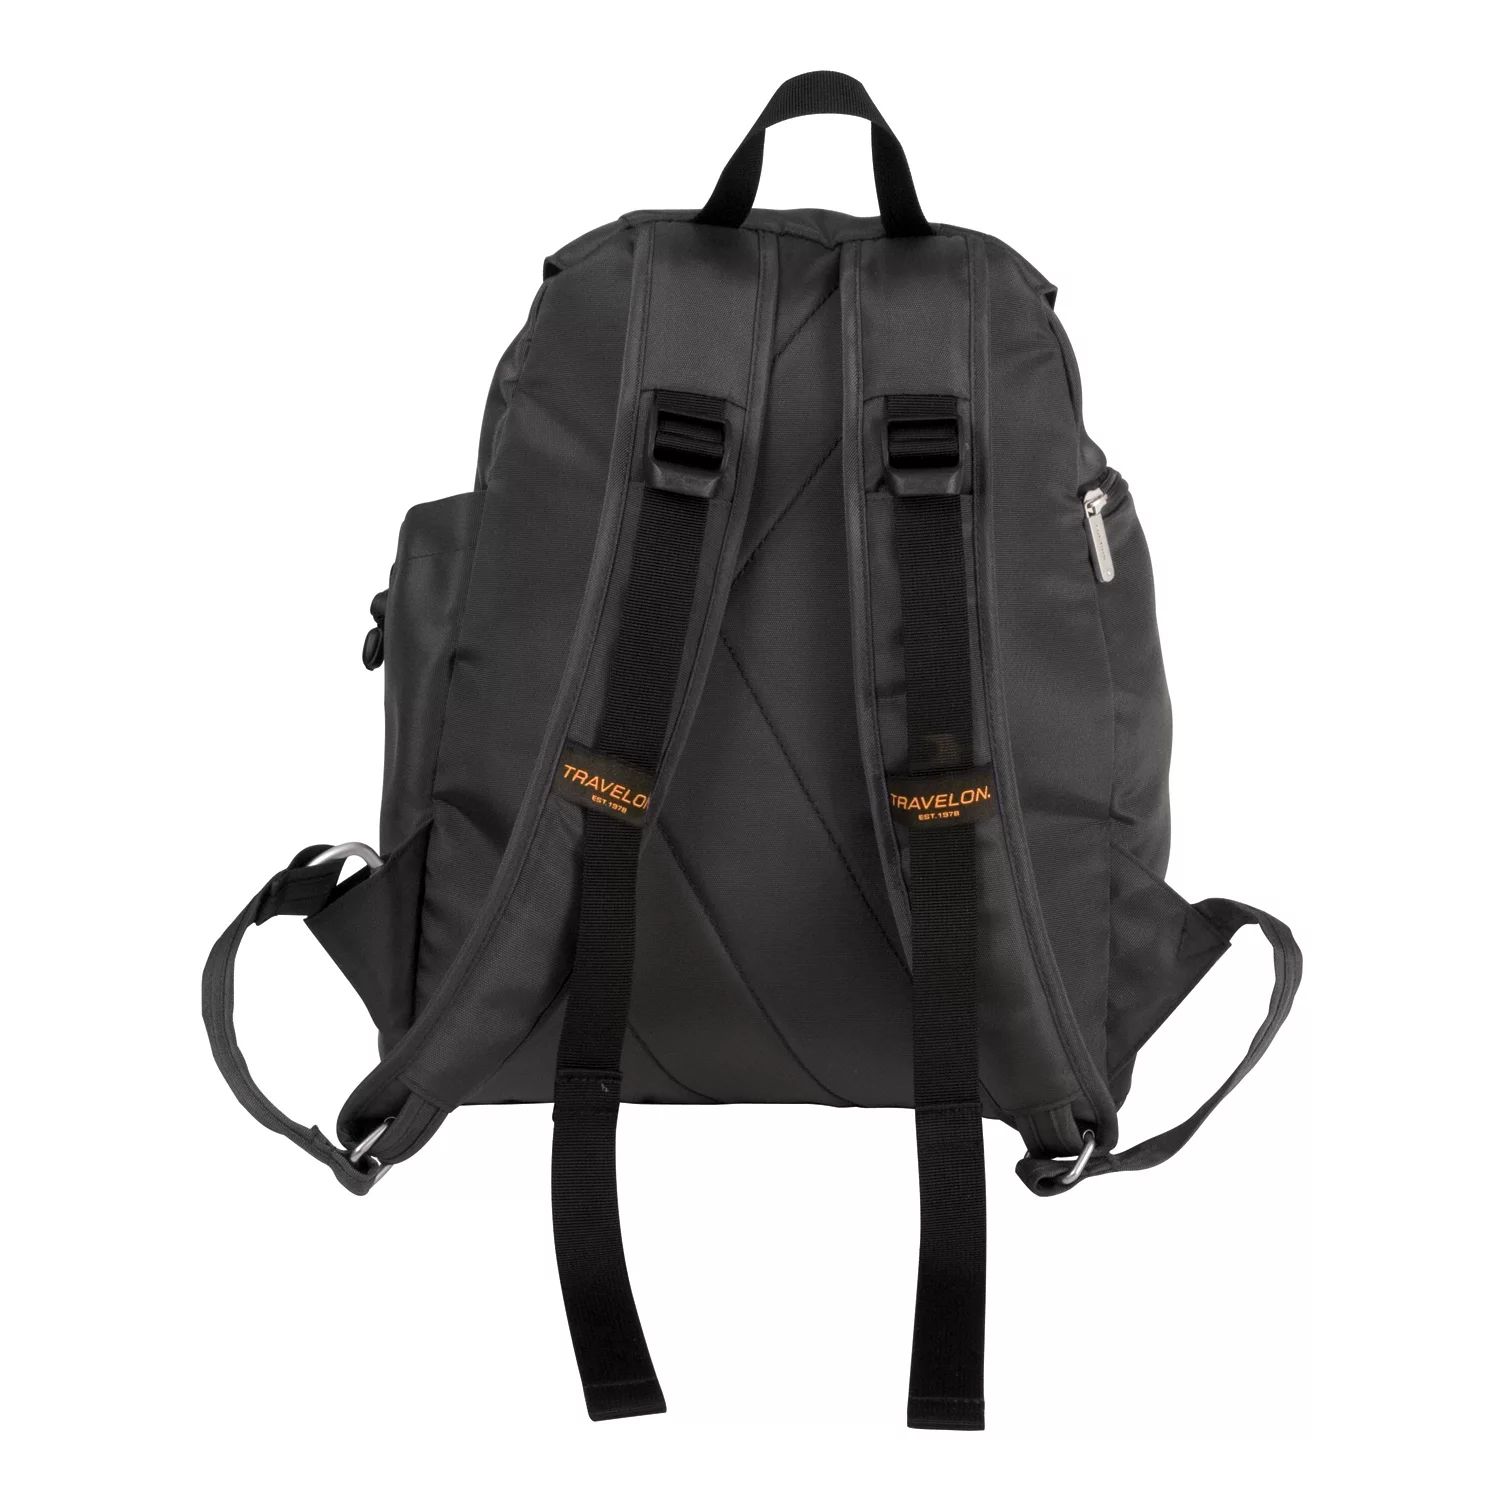 Рюкзак Travelon с защитой от кражи, черный рюкзак женский из ткани оксфорд с защитой от кражи 2019